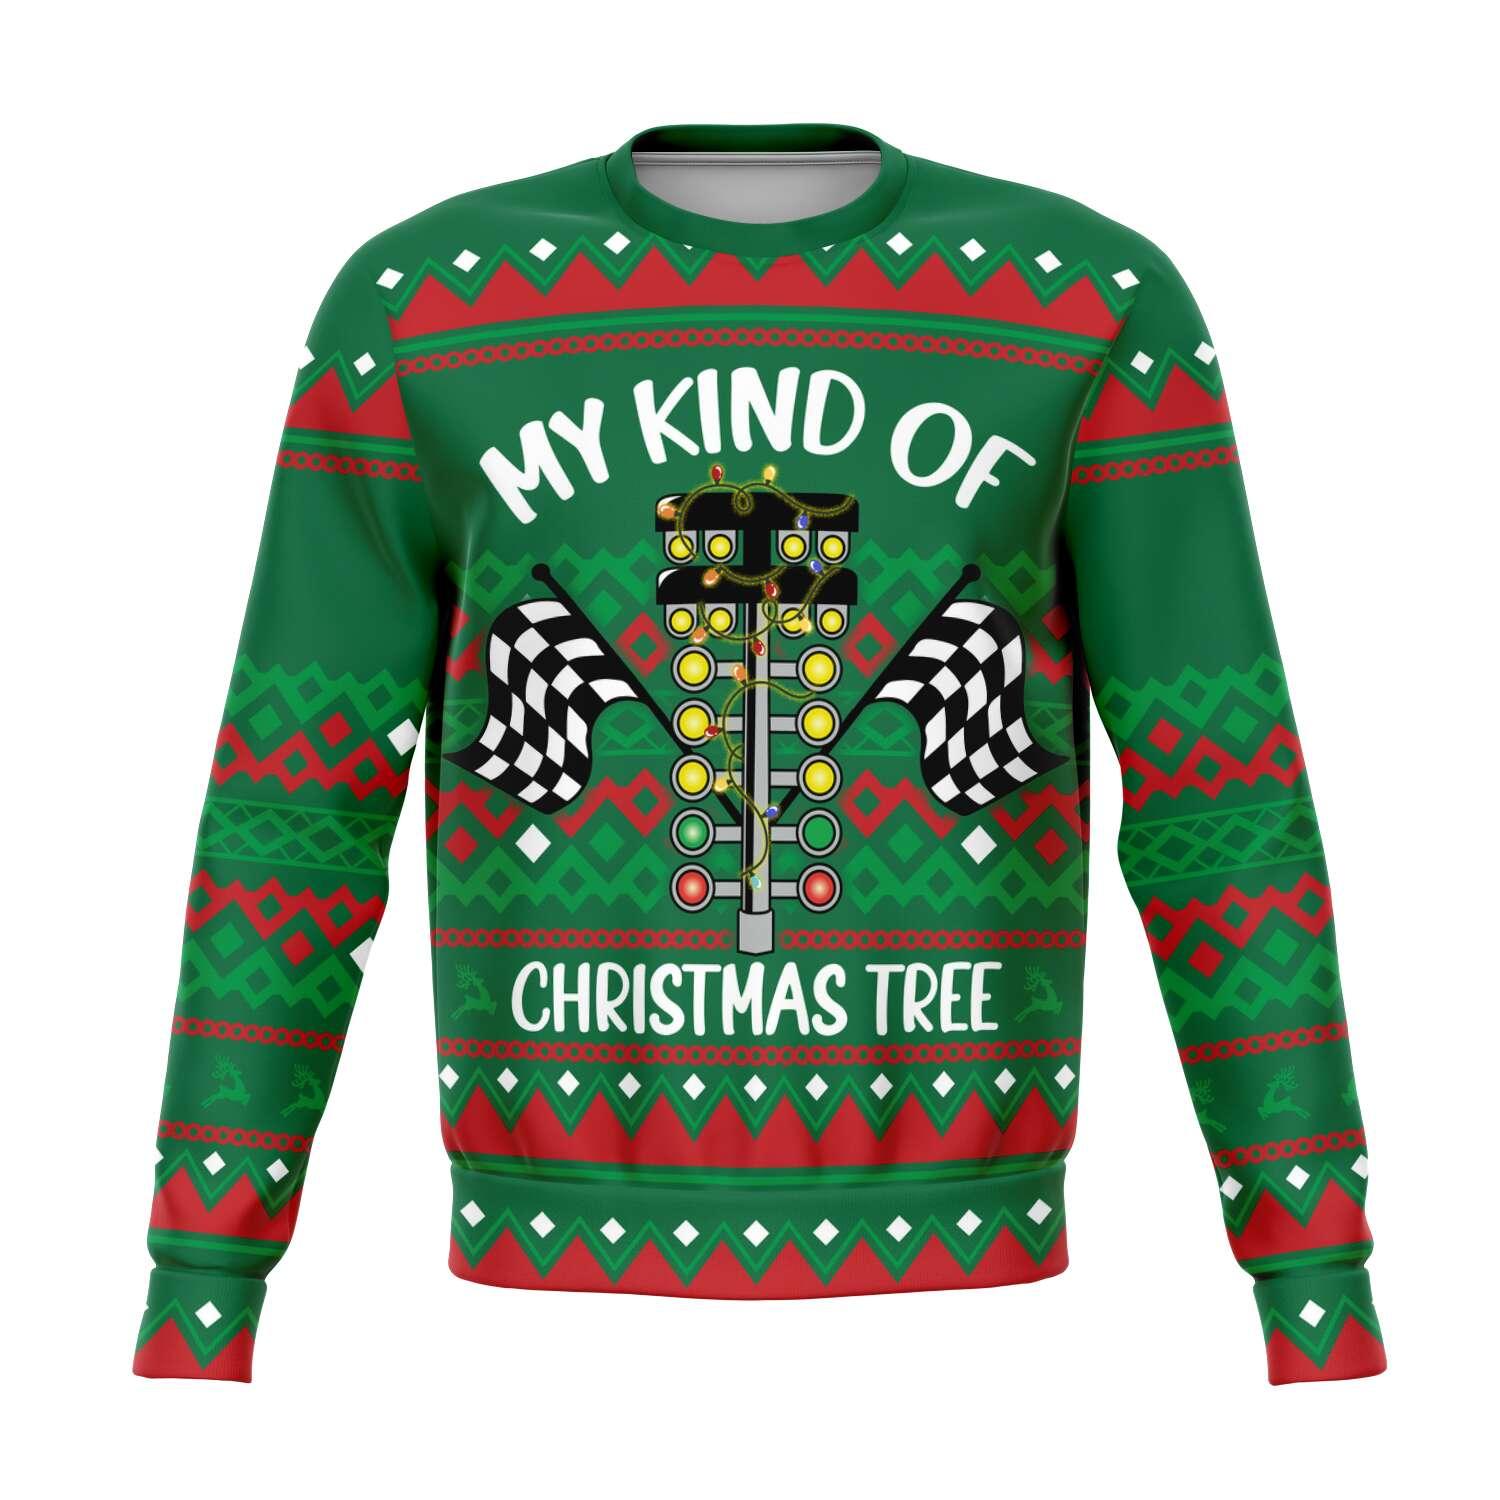 My kind of Christmas Tree Unisex Ugly Christmas Sweatshirt